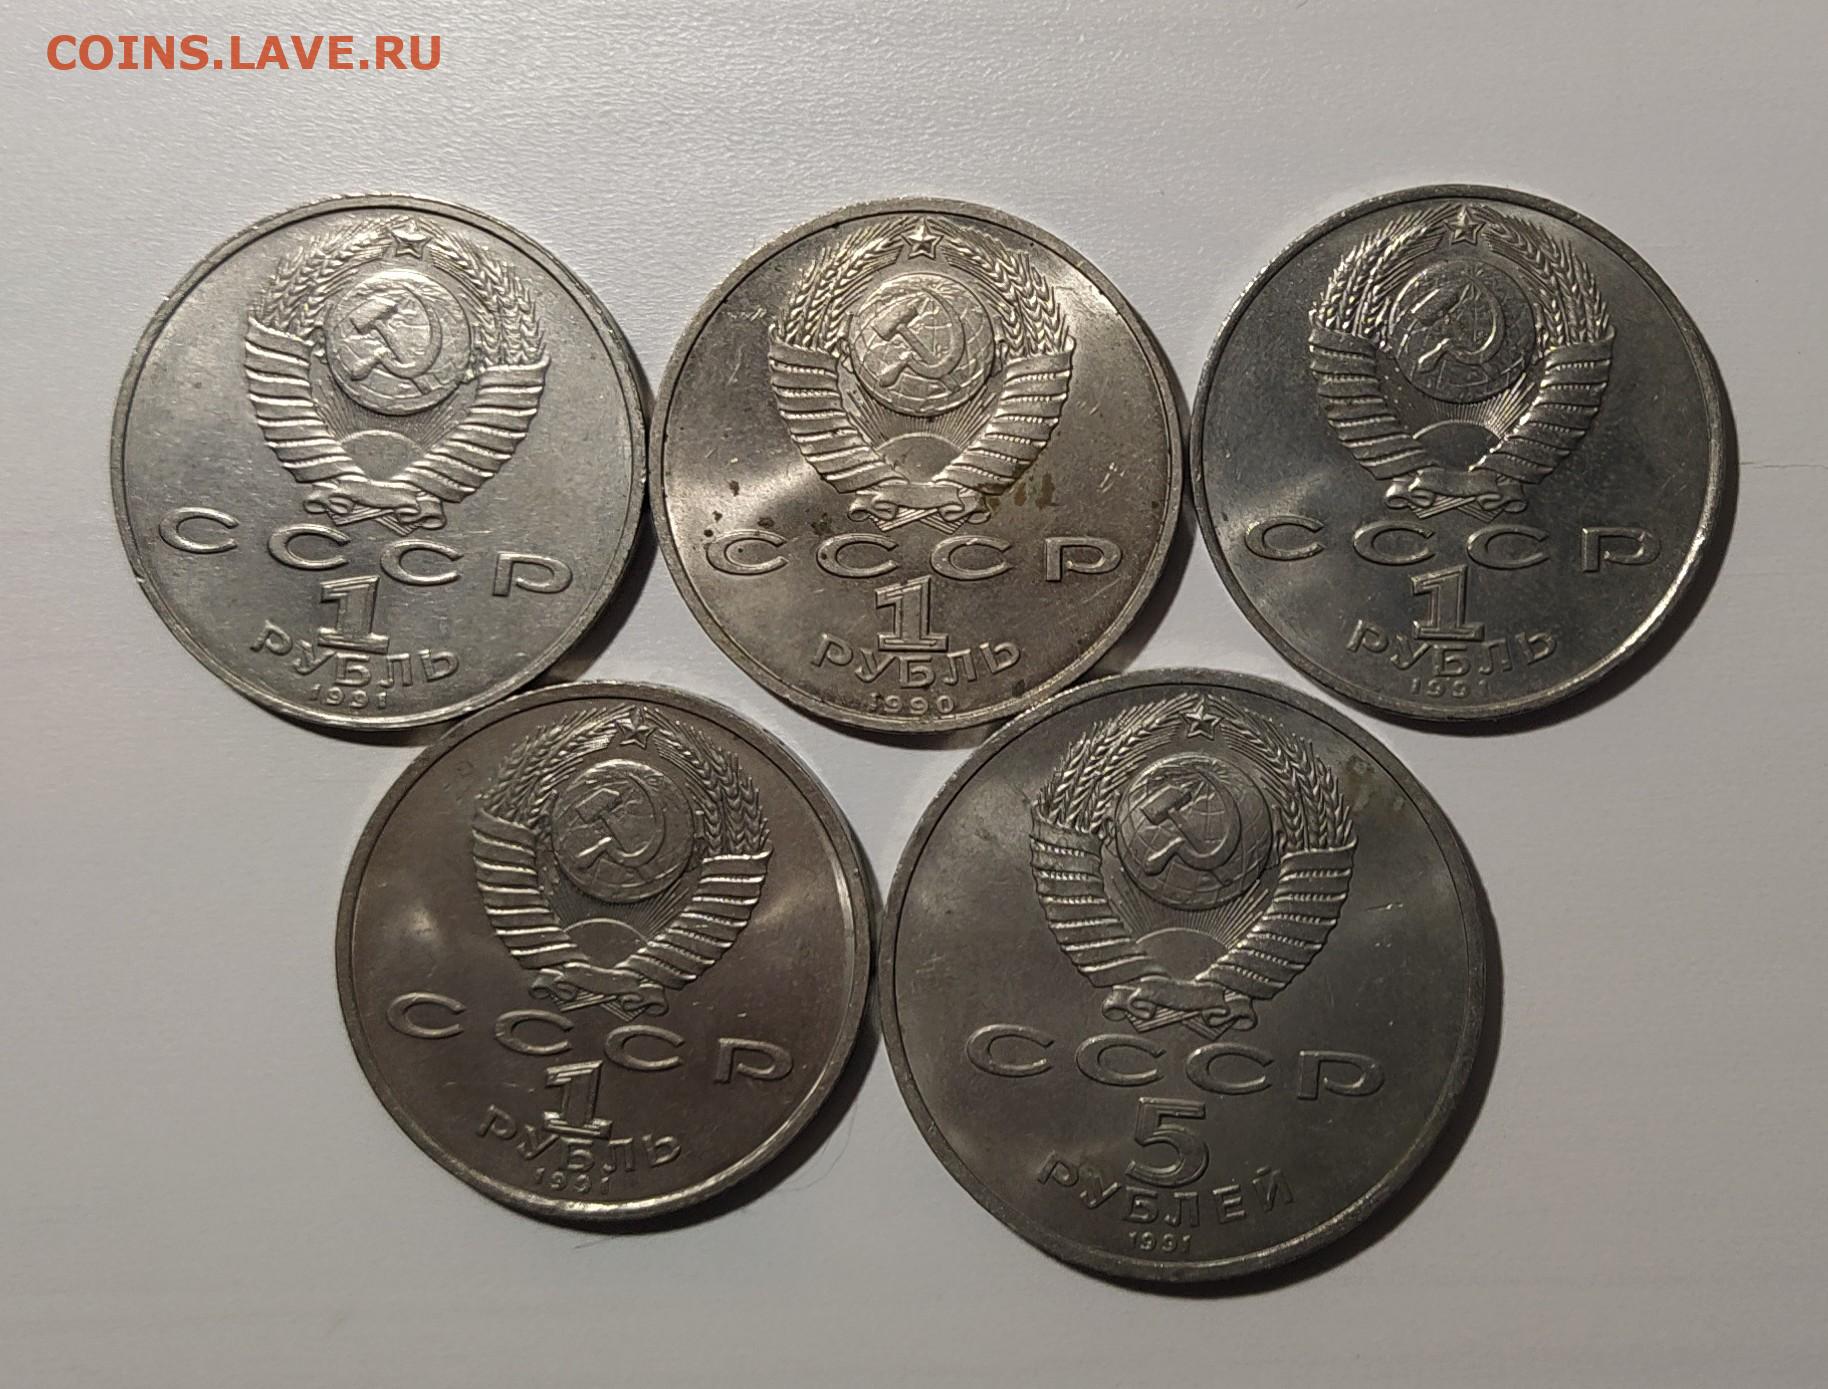 Продать монеты 5 рублей. Юбилейная монета СССР Сталин.